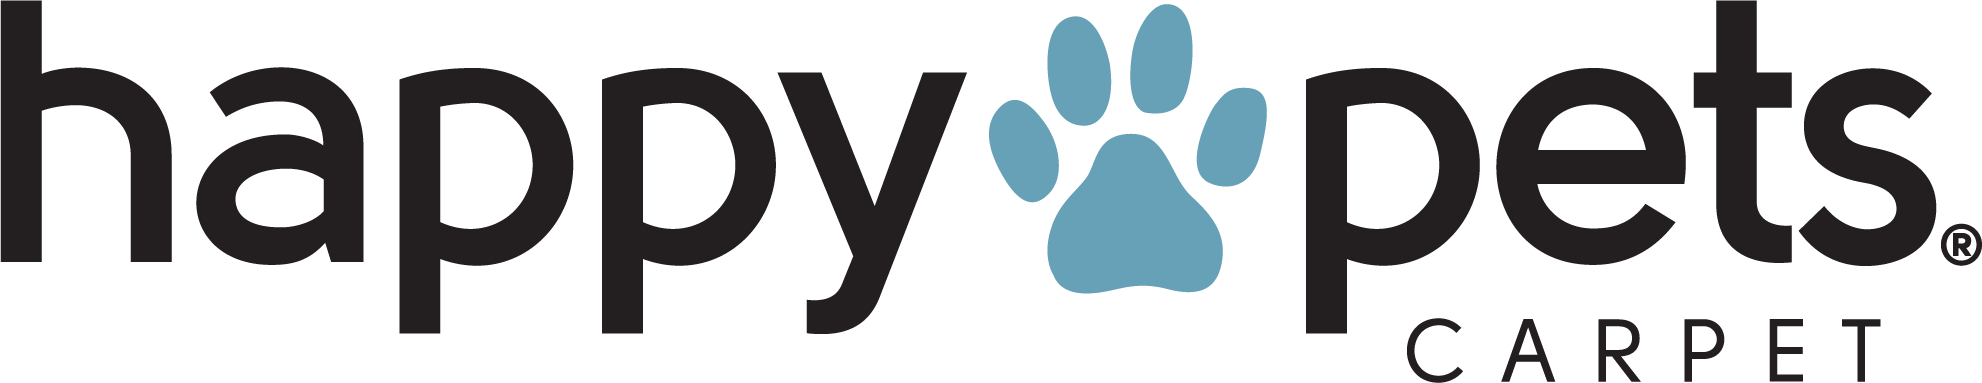 Pet Performance Happy Pets Logo | COLORTILE of Salem